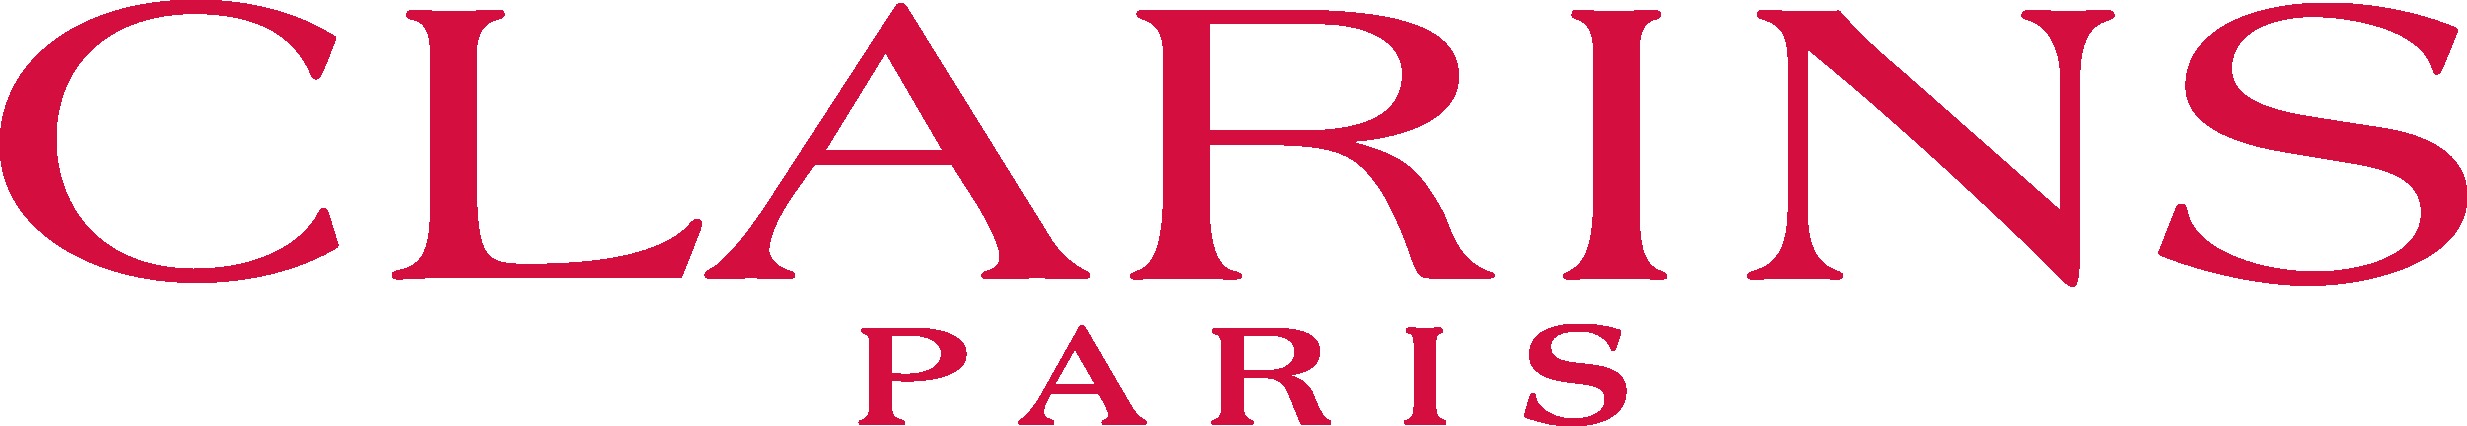 Логотип Clarins (Кларанс)